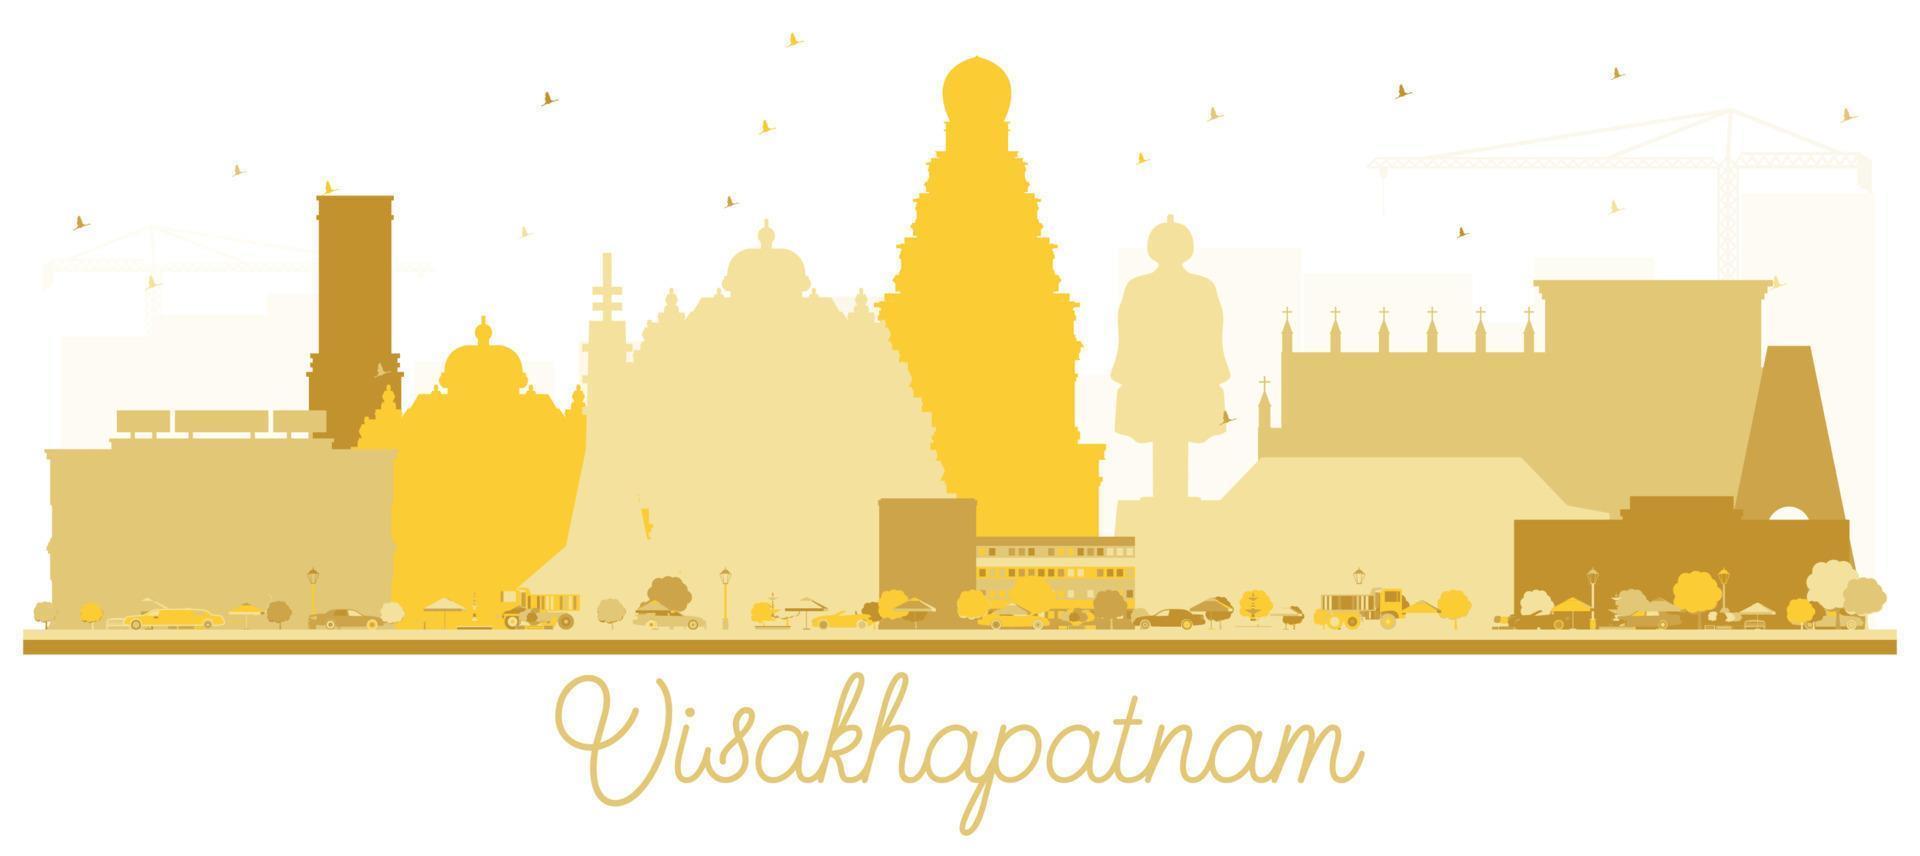 visakhapatnam indien skyline der stadt goldene silhouette. vektor